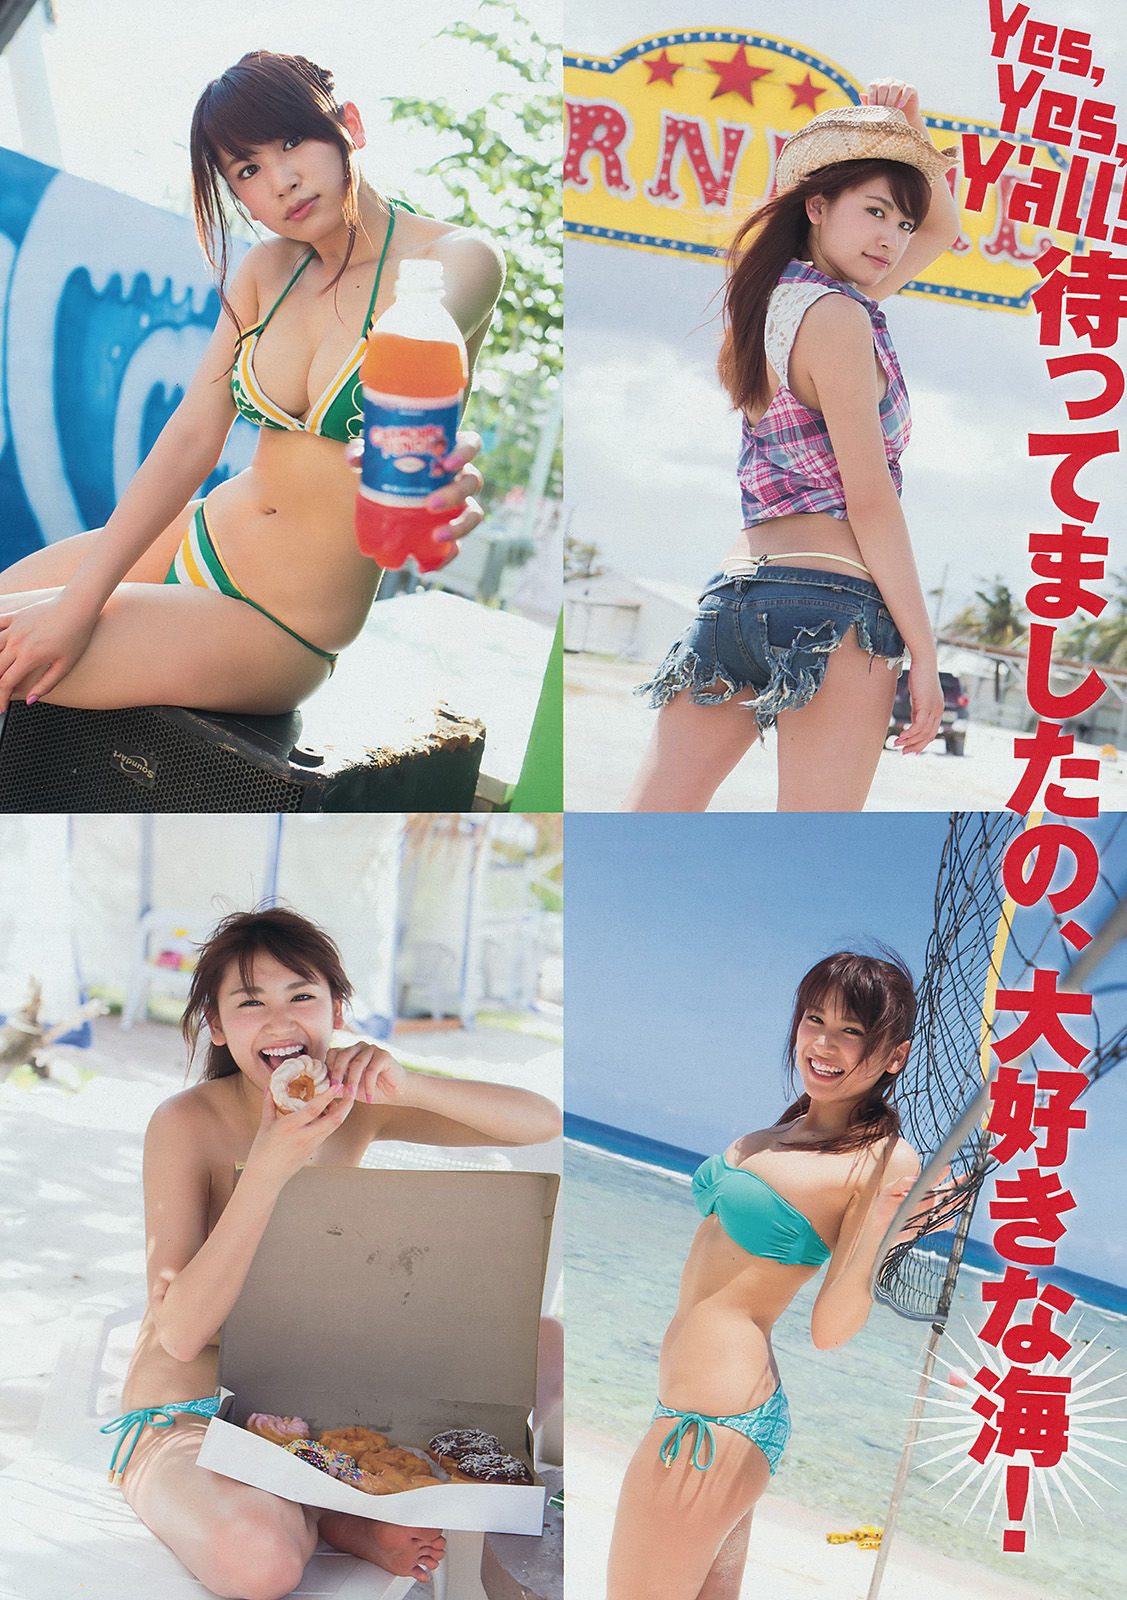 [Young Magazine] Ikumi Hisamatsu Haruna Kawaguchi 2014 No.32 Photograph Page 4 No.39f3a6